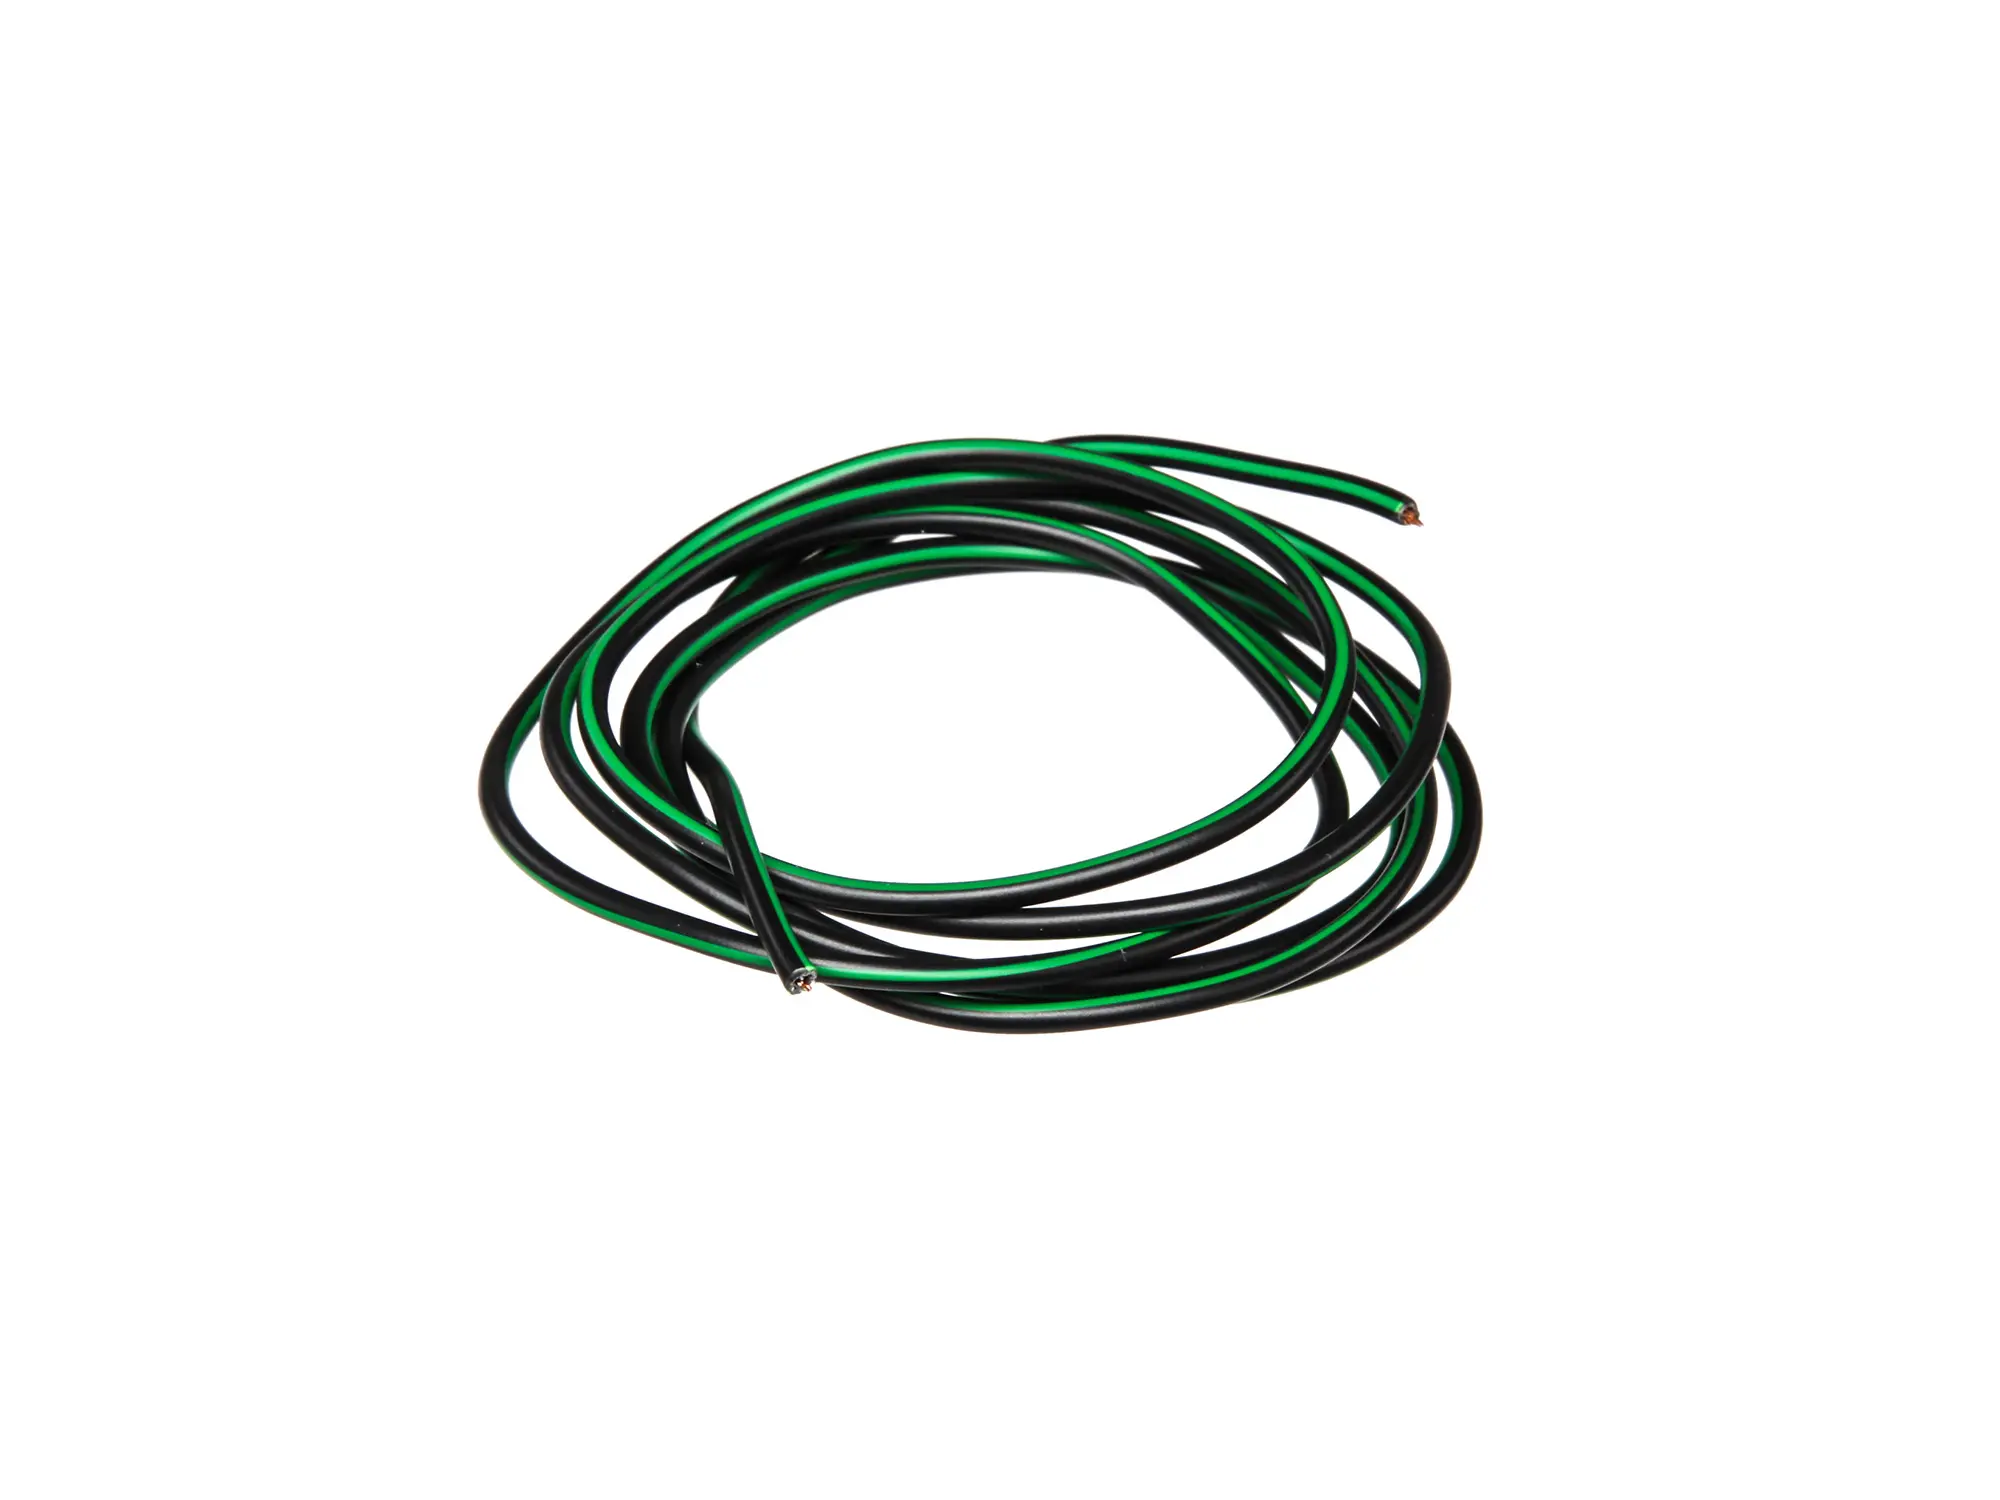 Kabel - Schwarz/Grün 0,50mm² Fahrzeugleitung - 1m, Art.-Nr.: 10001770 - Bild 1